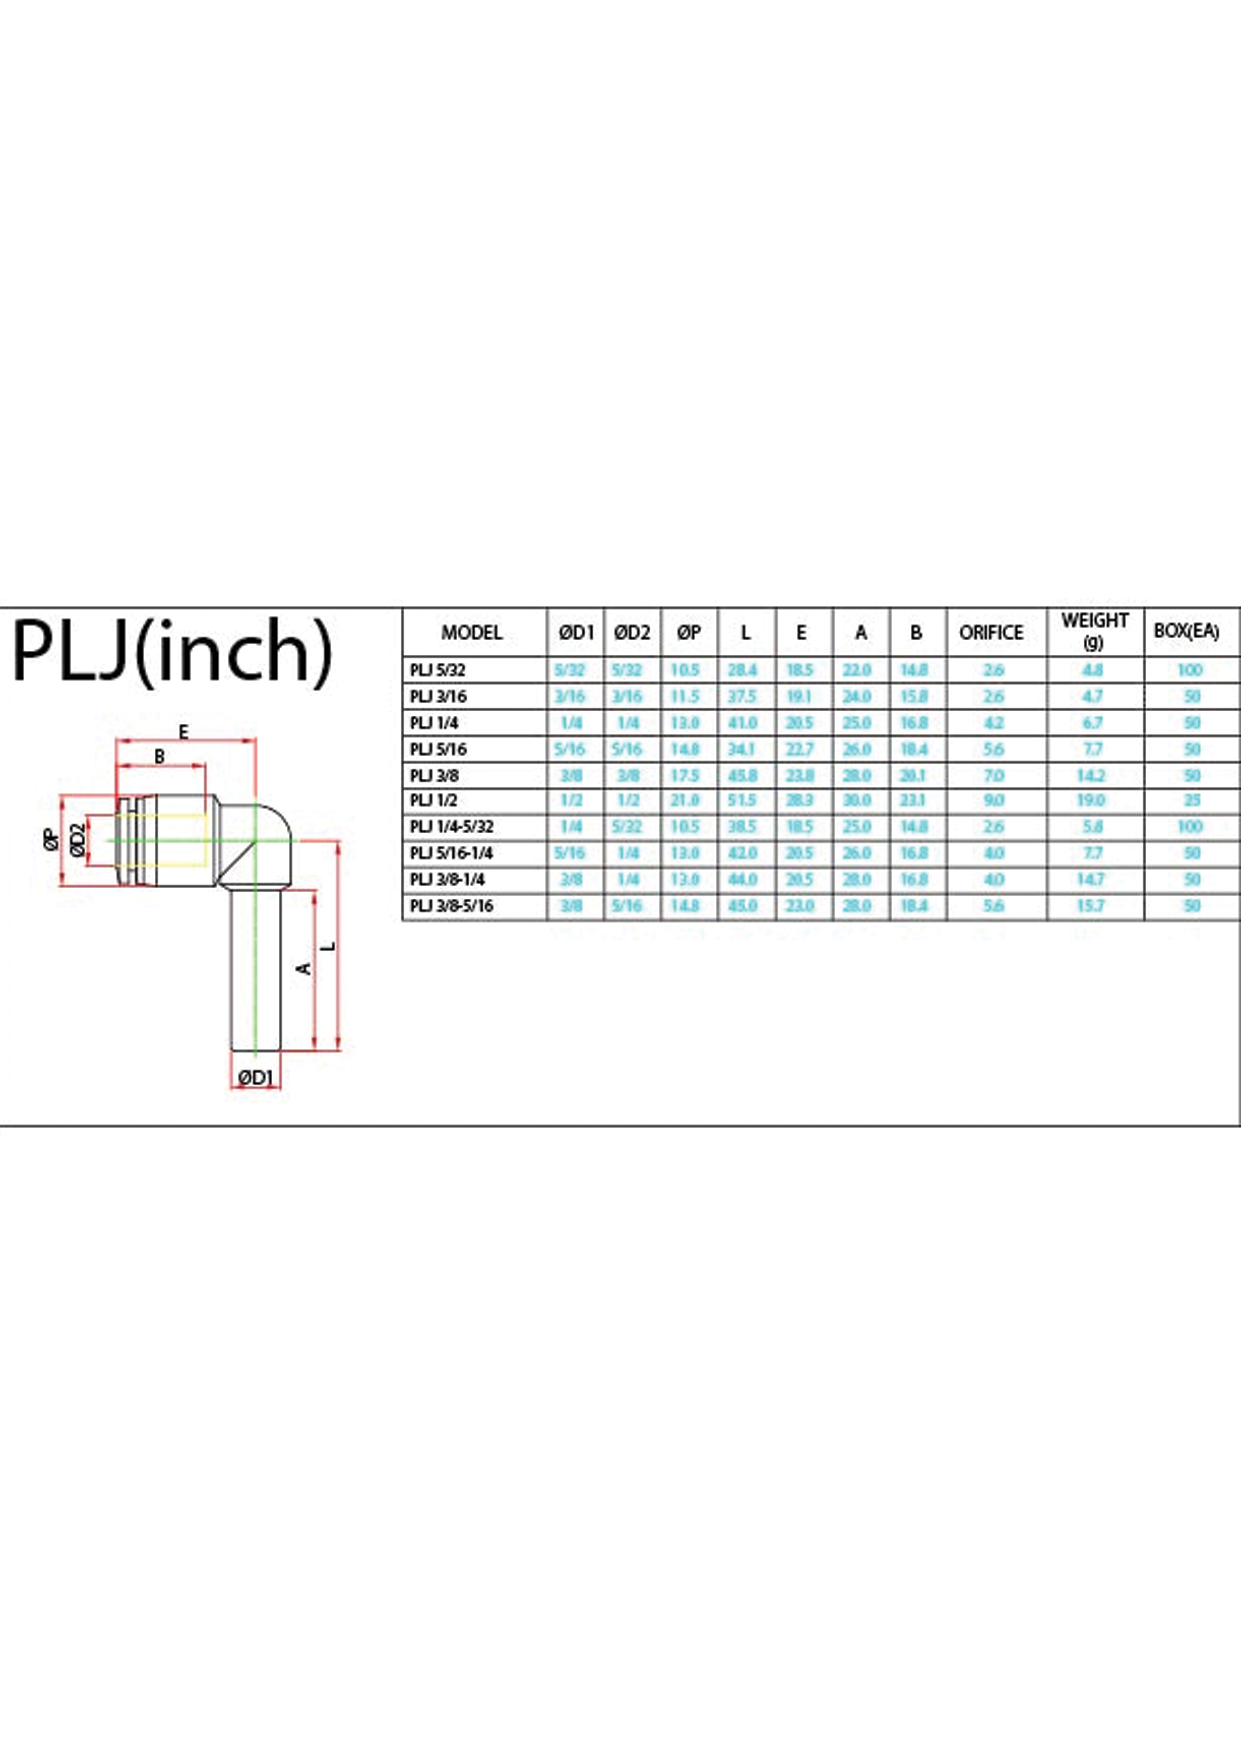 PLJ (Inch) Data Sheet ( 114 KB )